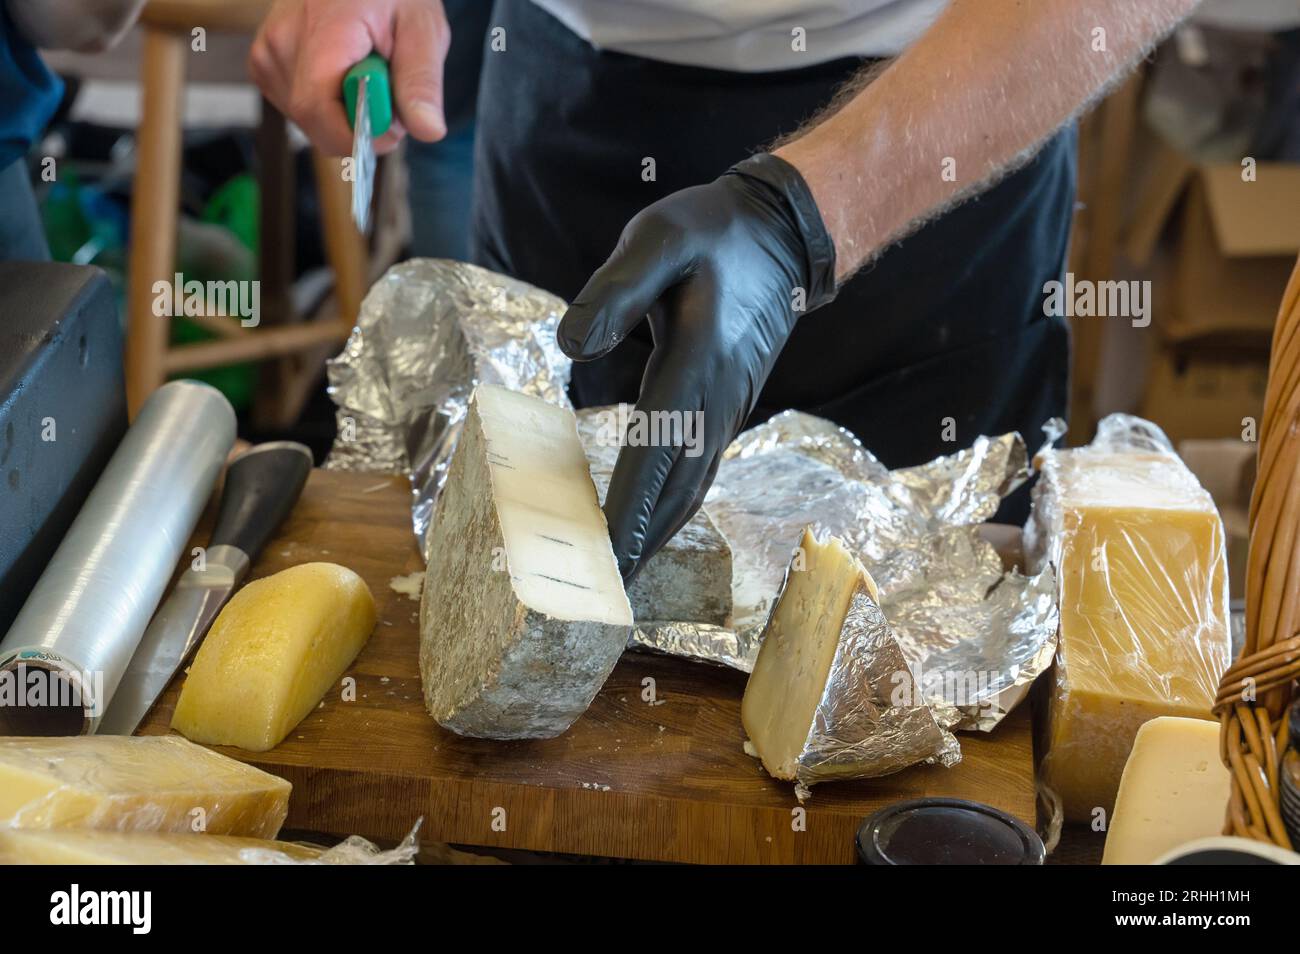 Die Hände des Verkäufers haben ein Stück Käse abgeschnitten. Russischer Bauernkäse vom Hersteller. Auswahl an leckerem Käse auf der Theke. Stockfoto